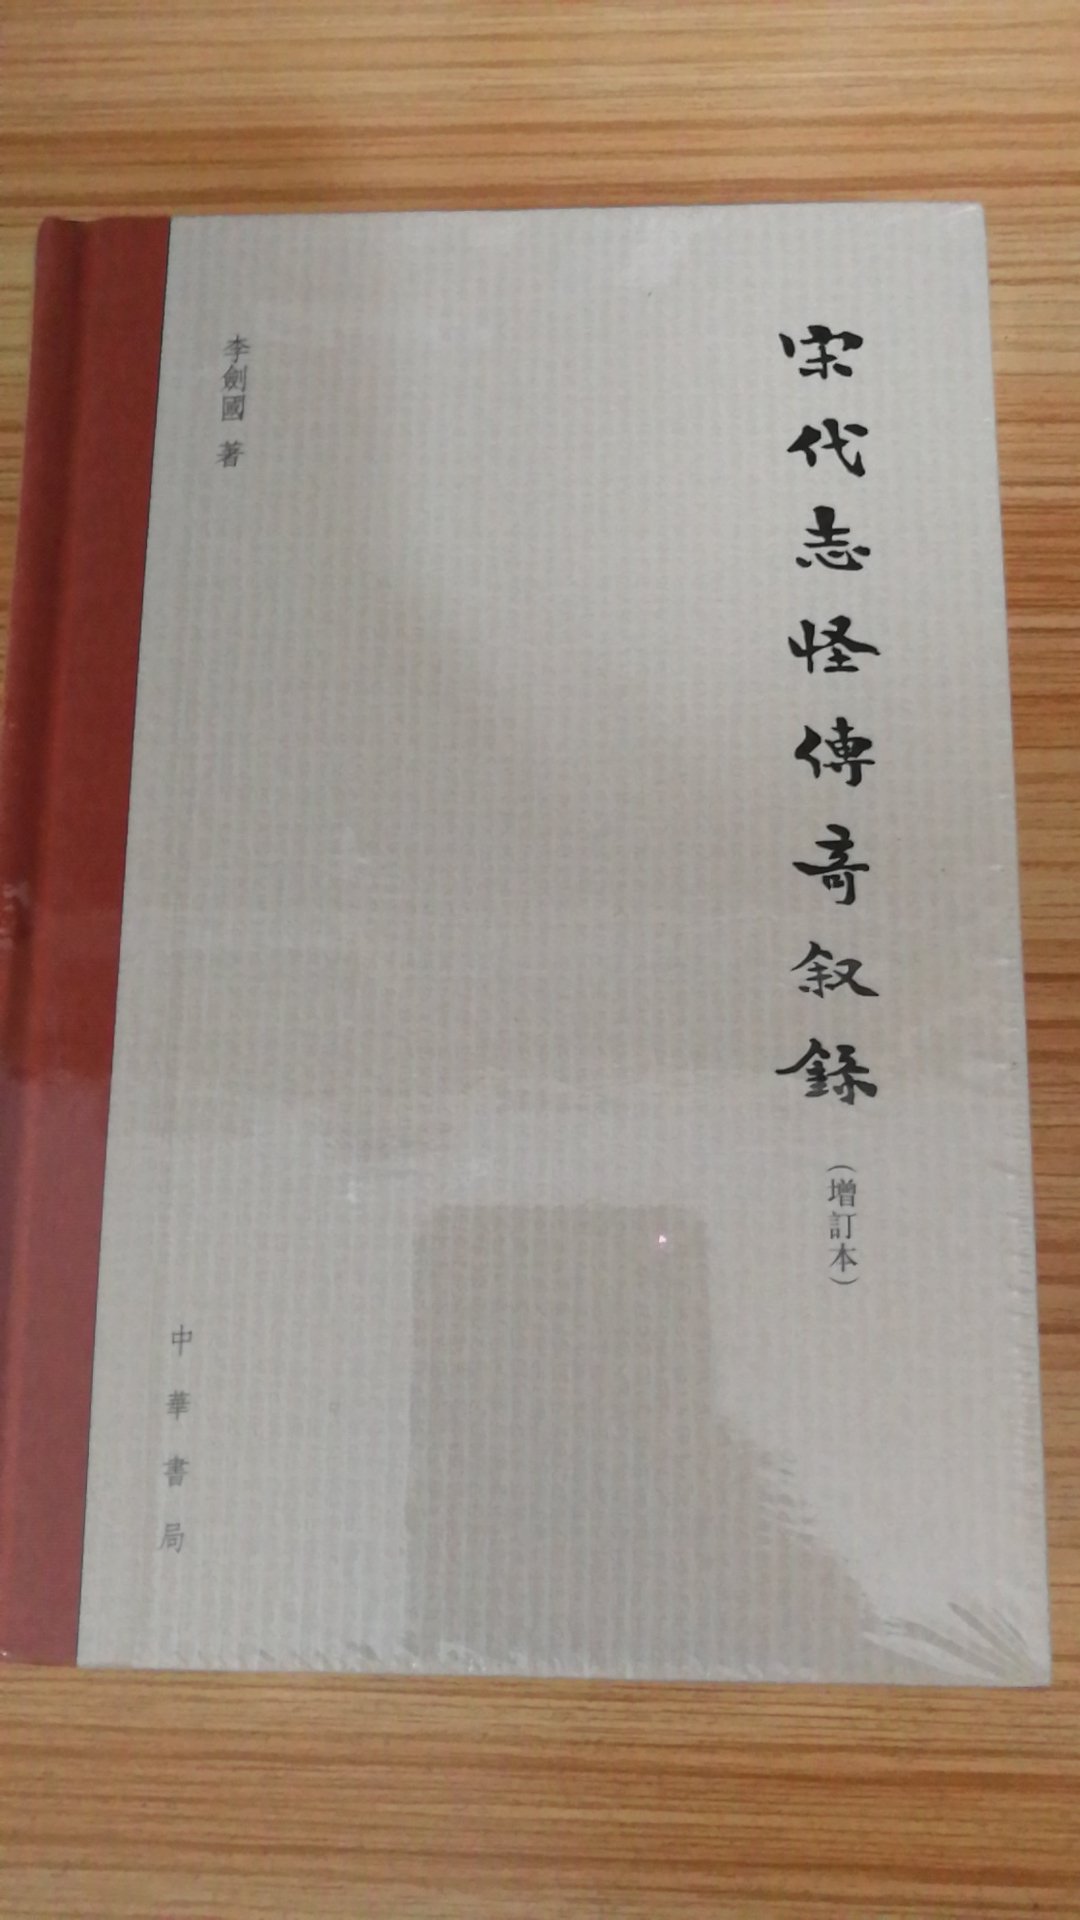 李剑国先生，长期从事中国古代文学的研究和教学工作，以研究文言小说和古代文化为主。讲授过《中国文学史》、《中国小说史》、《唐代小说研究》、《道教与文学》、《文献学》、《校勘学》等硕士博士生课程，对志怪传奇小说有非常精深的研究，之前他也是整理的唐五代传奇集，非常厚的一套书，对这个研究贡献非常大，趁着活动拿下，非常实惠。